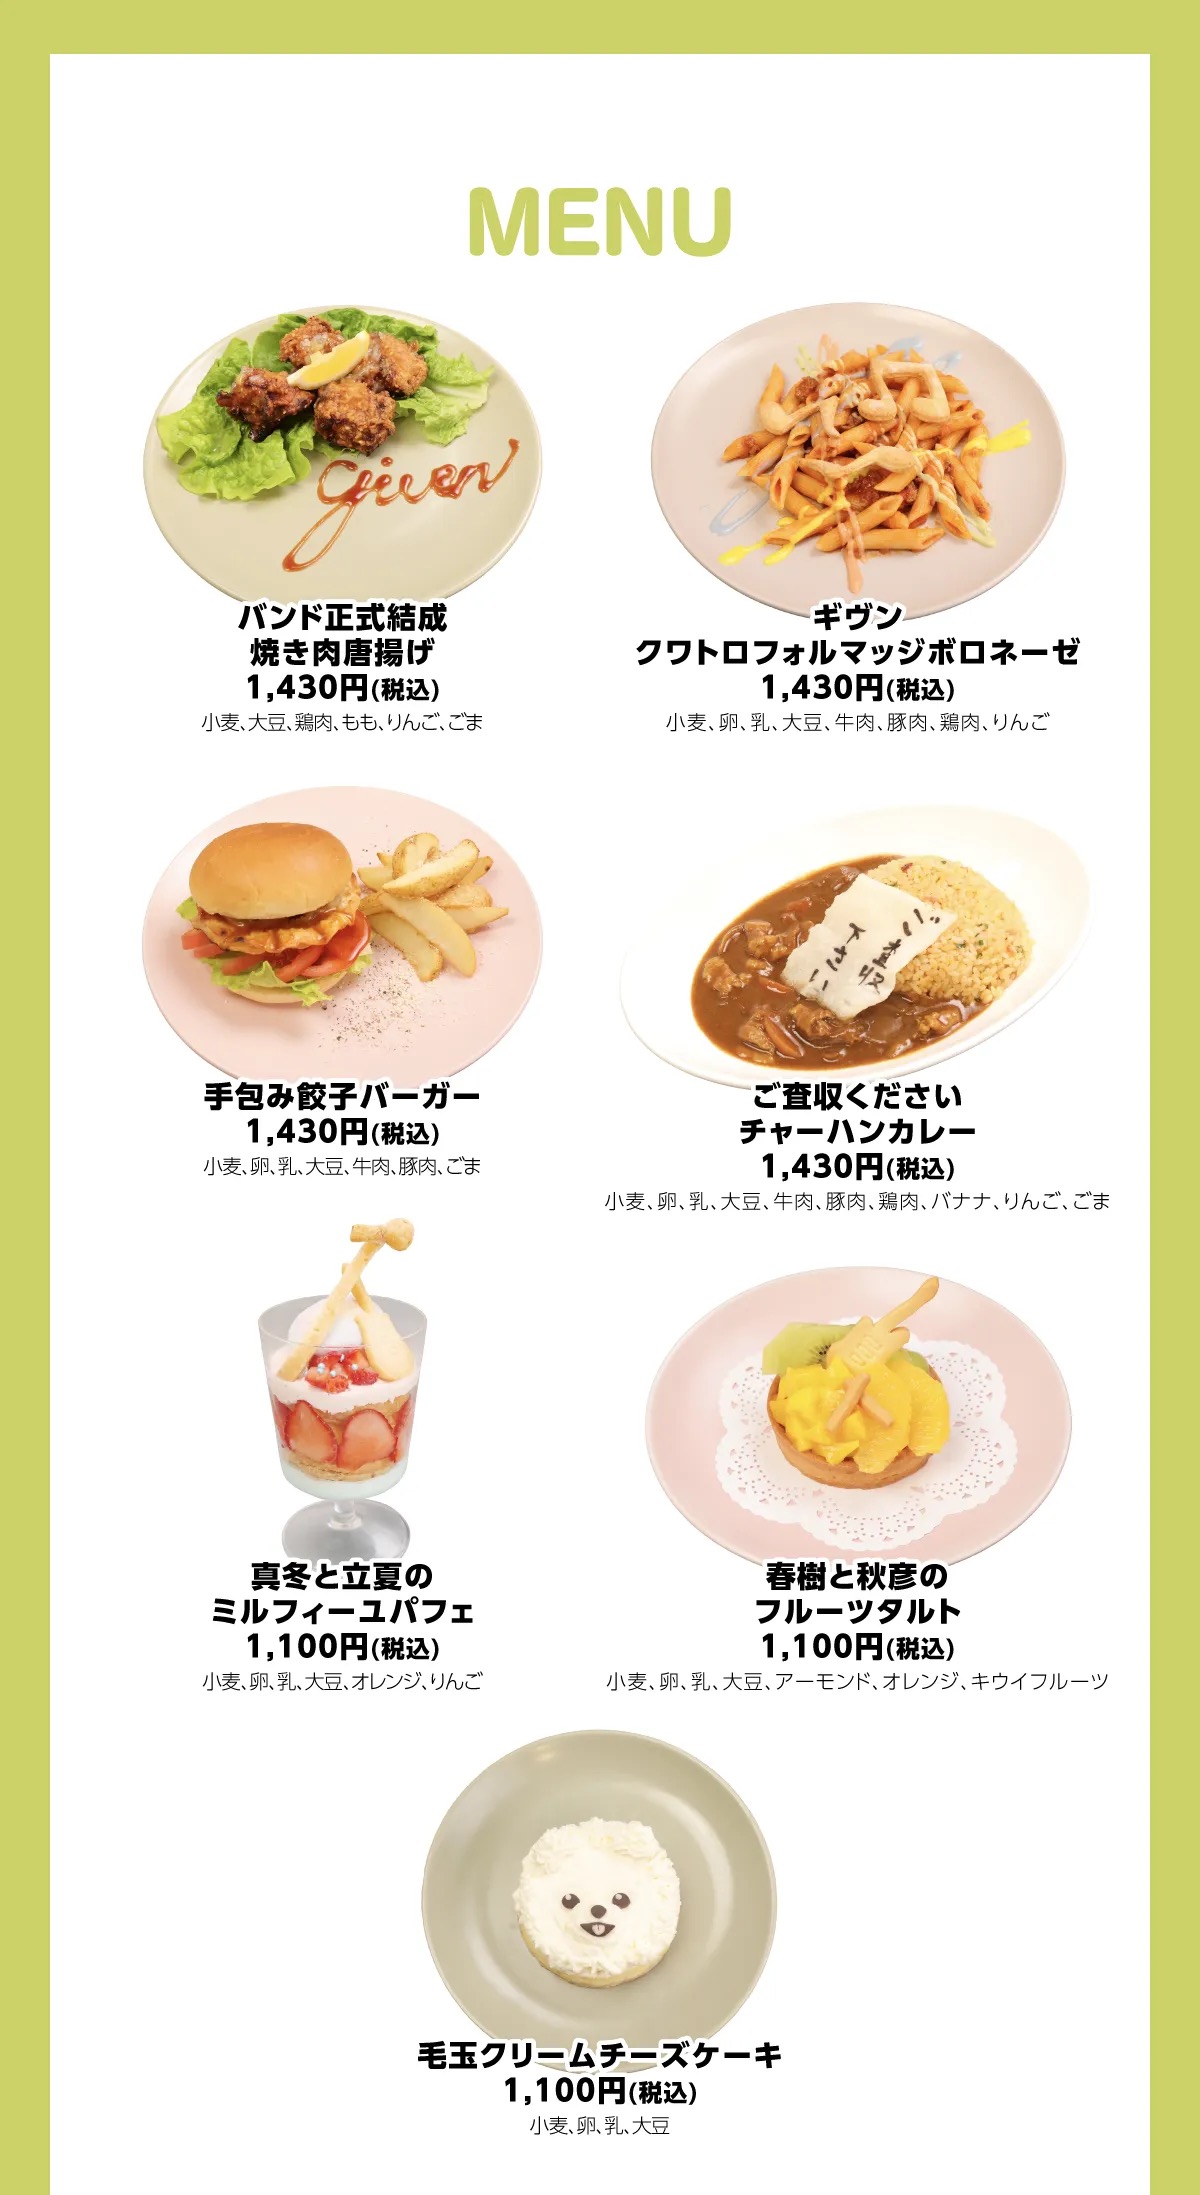 映画「ギヴン」× NATS LIVE CAFE 東京・大阪 5月10日よりコラボ開催!